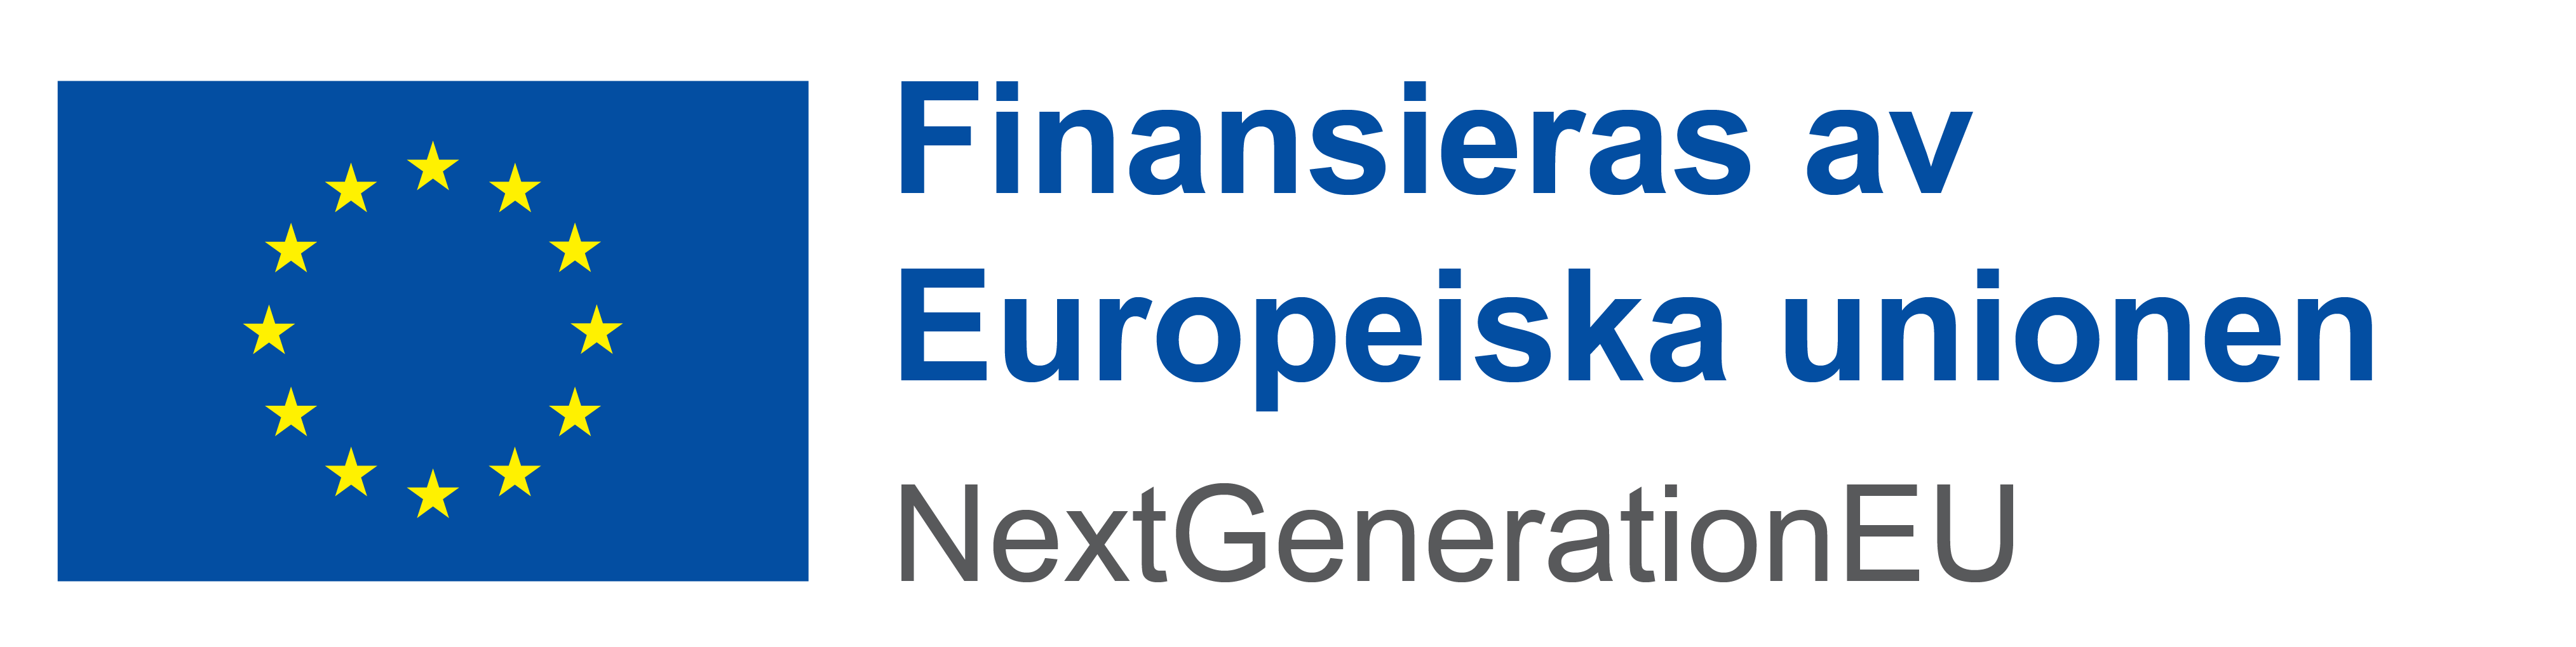 Finansieras av Europeiska unionen - NextGenerationEU